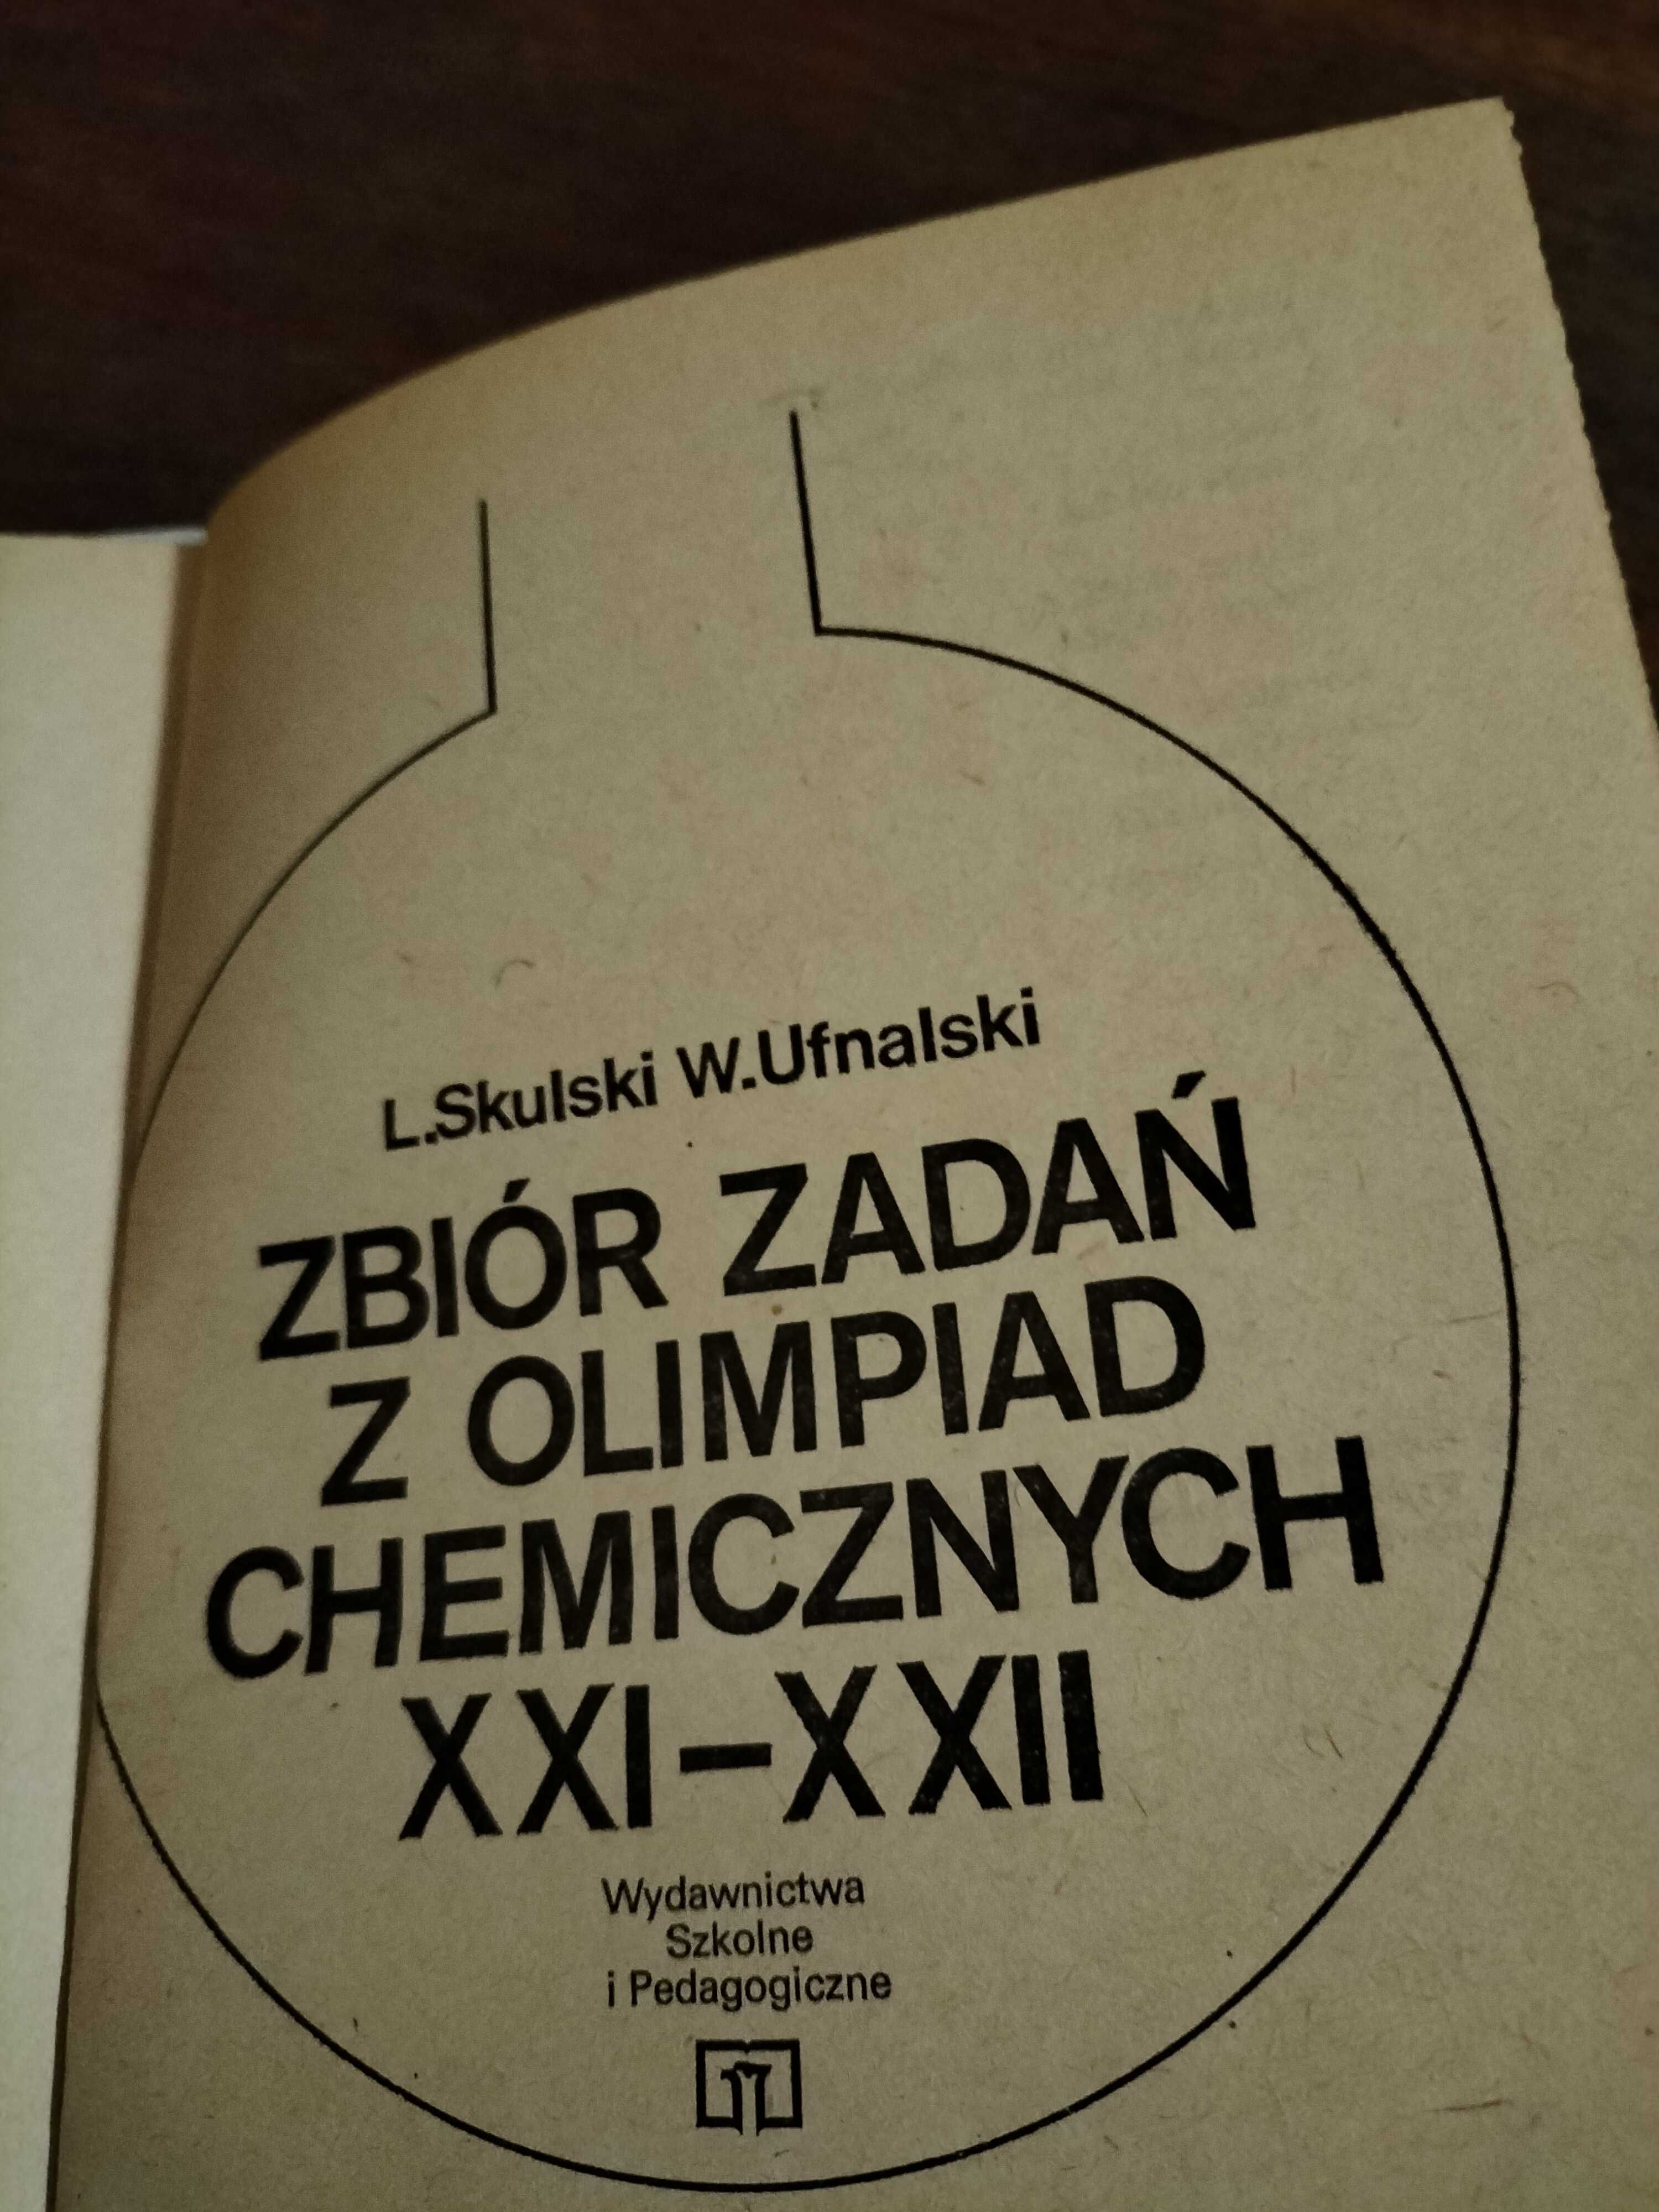 Zbiór zadań z olimpiad chemicznych XXI - XXII - L.Skulski, W. Ufnalski